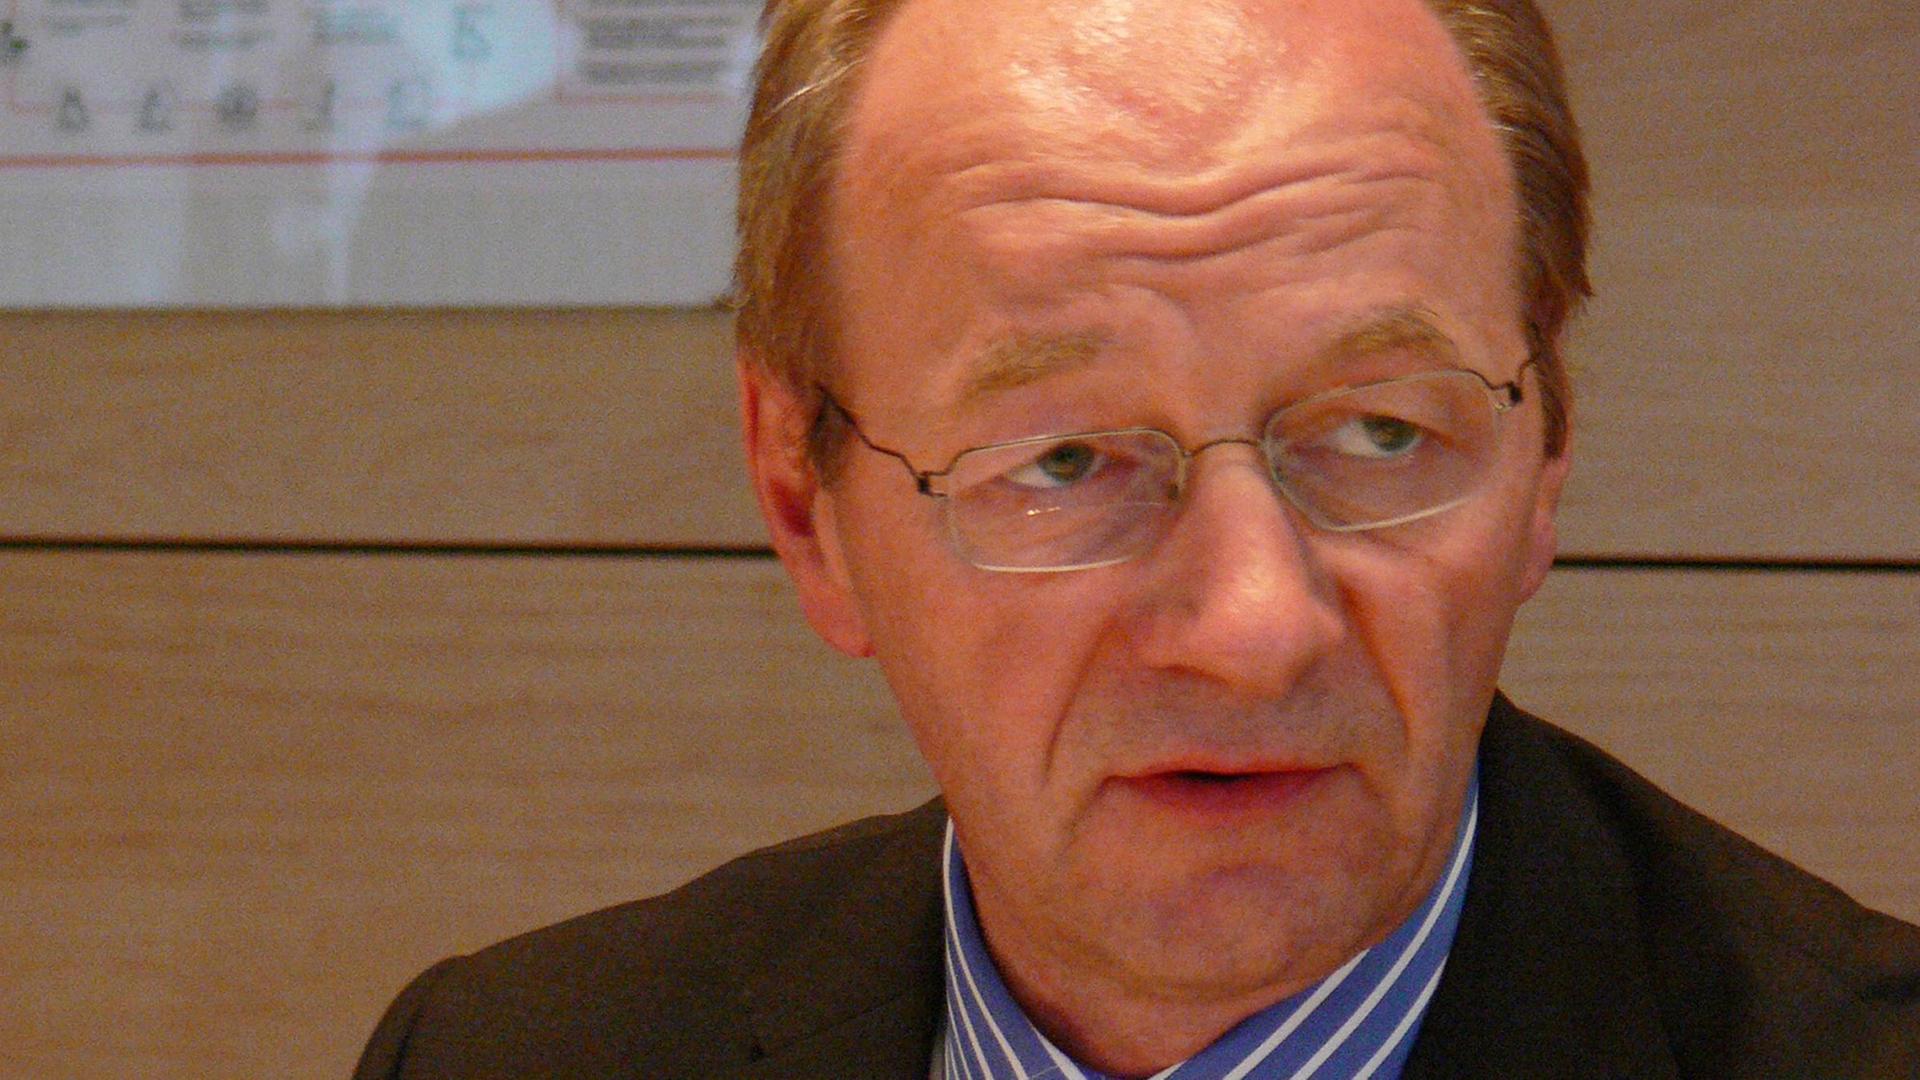 Josef Janning vom European Council on Foreign Relations auf einer Aufnahme aus dem Jahr 2008.